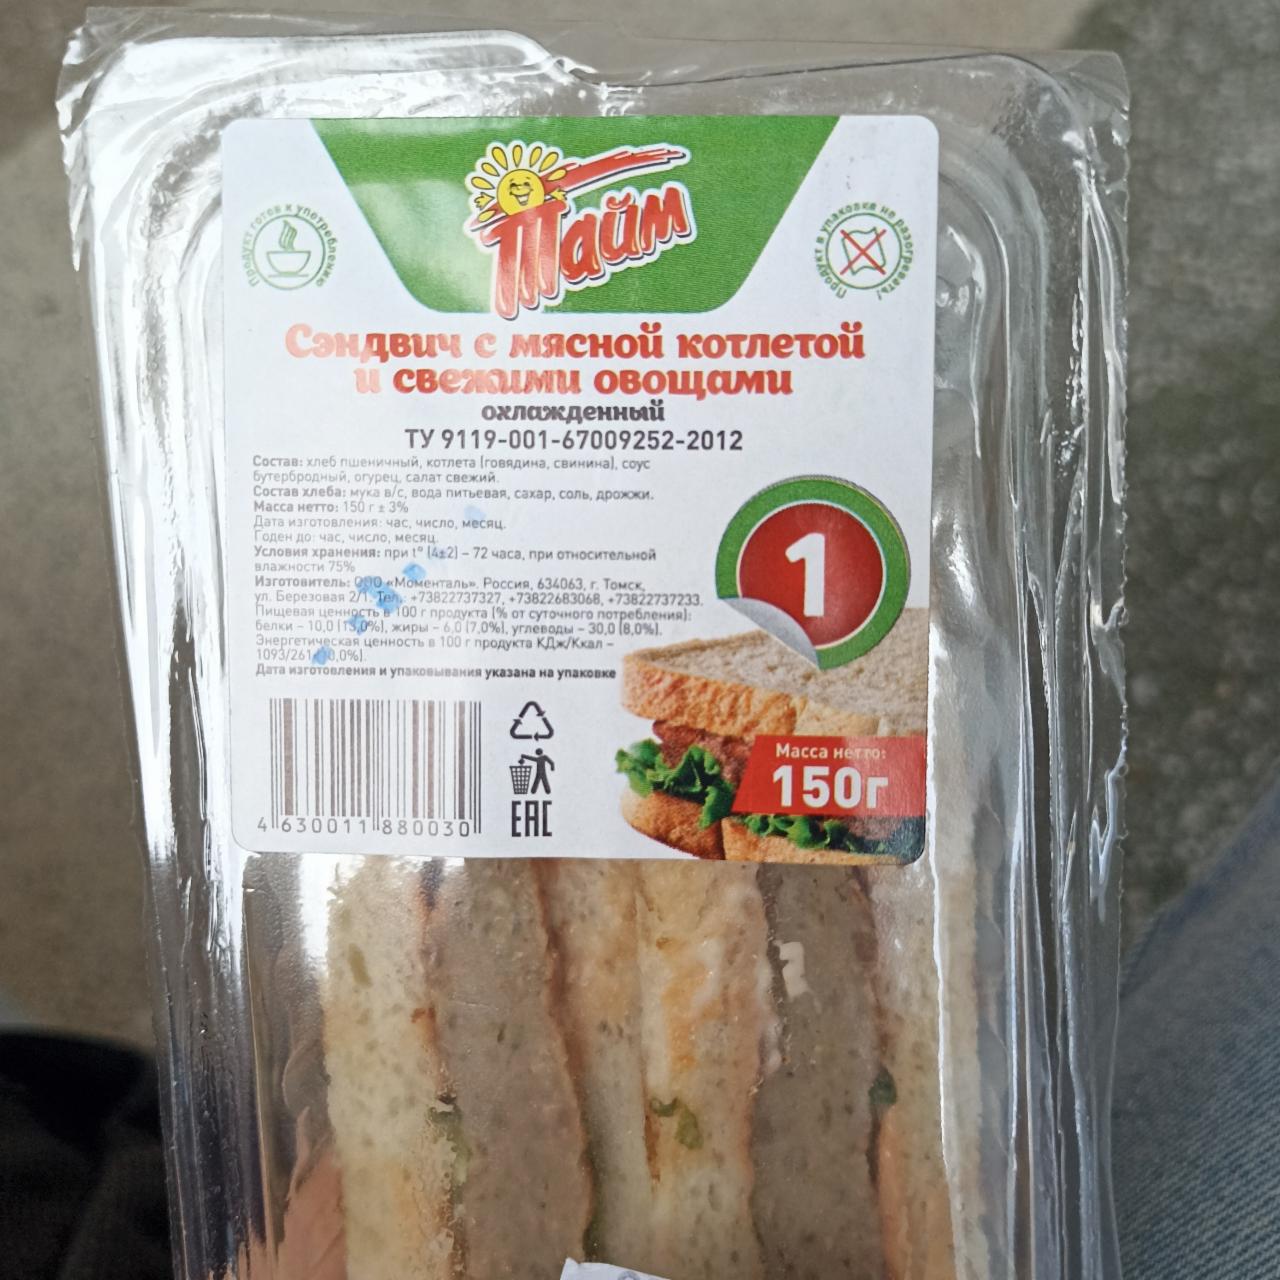 Фото - сэндвич с мясной котлетой и свежими овощами Тайм